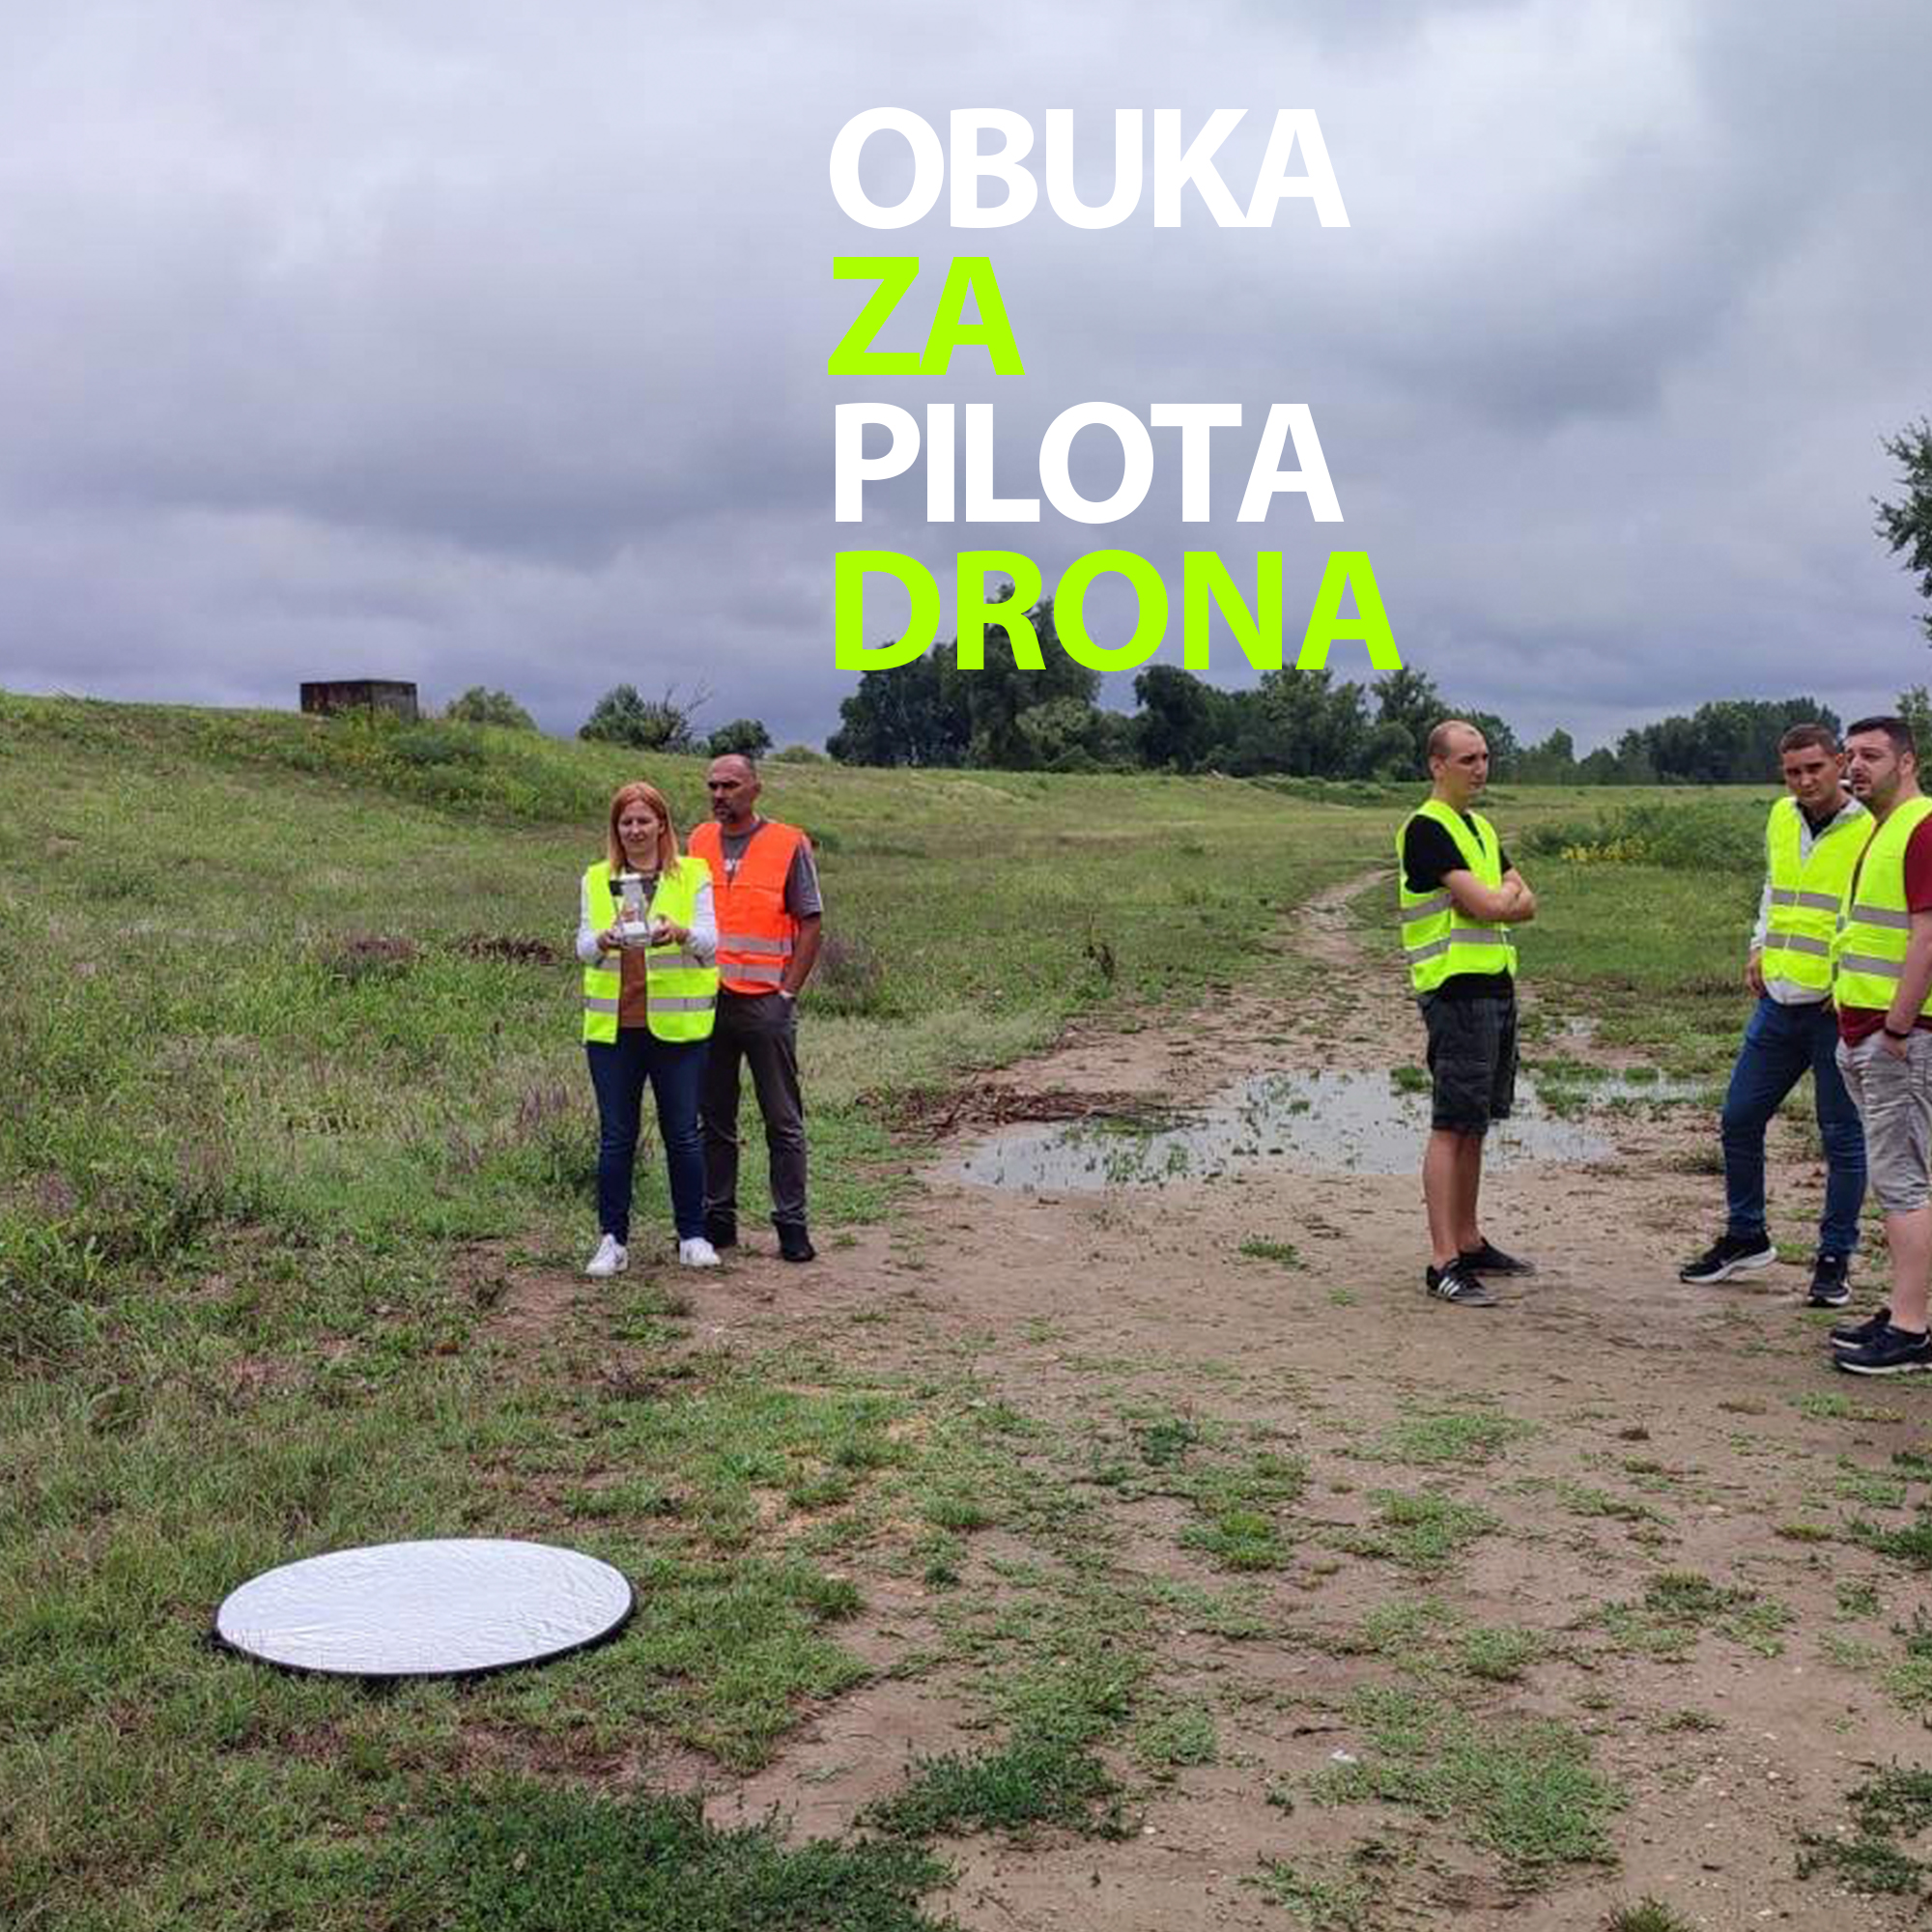 Obuka za pilota drona – škola za pilota drona